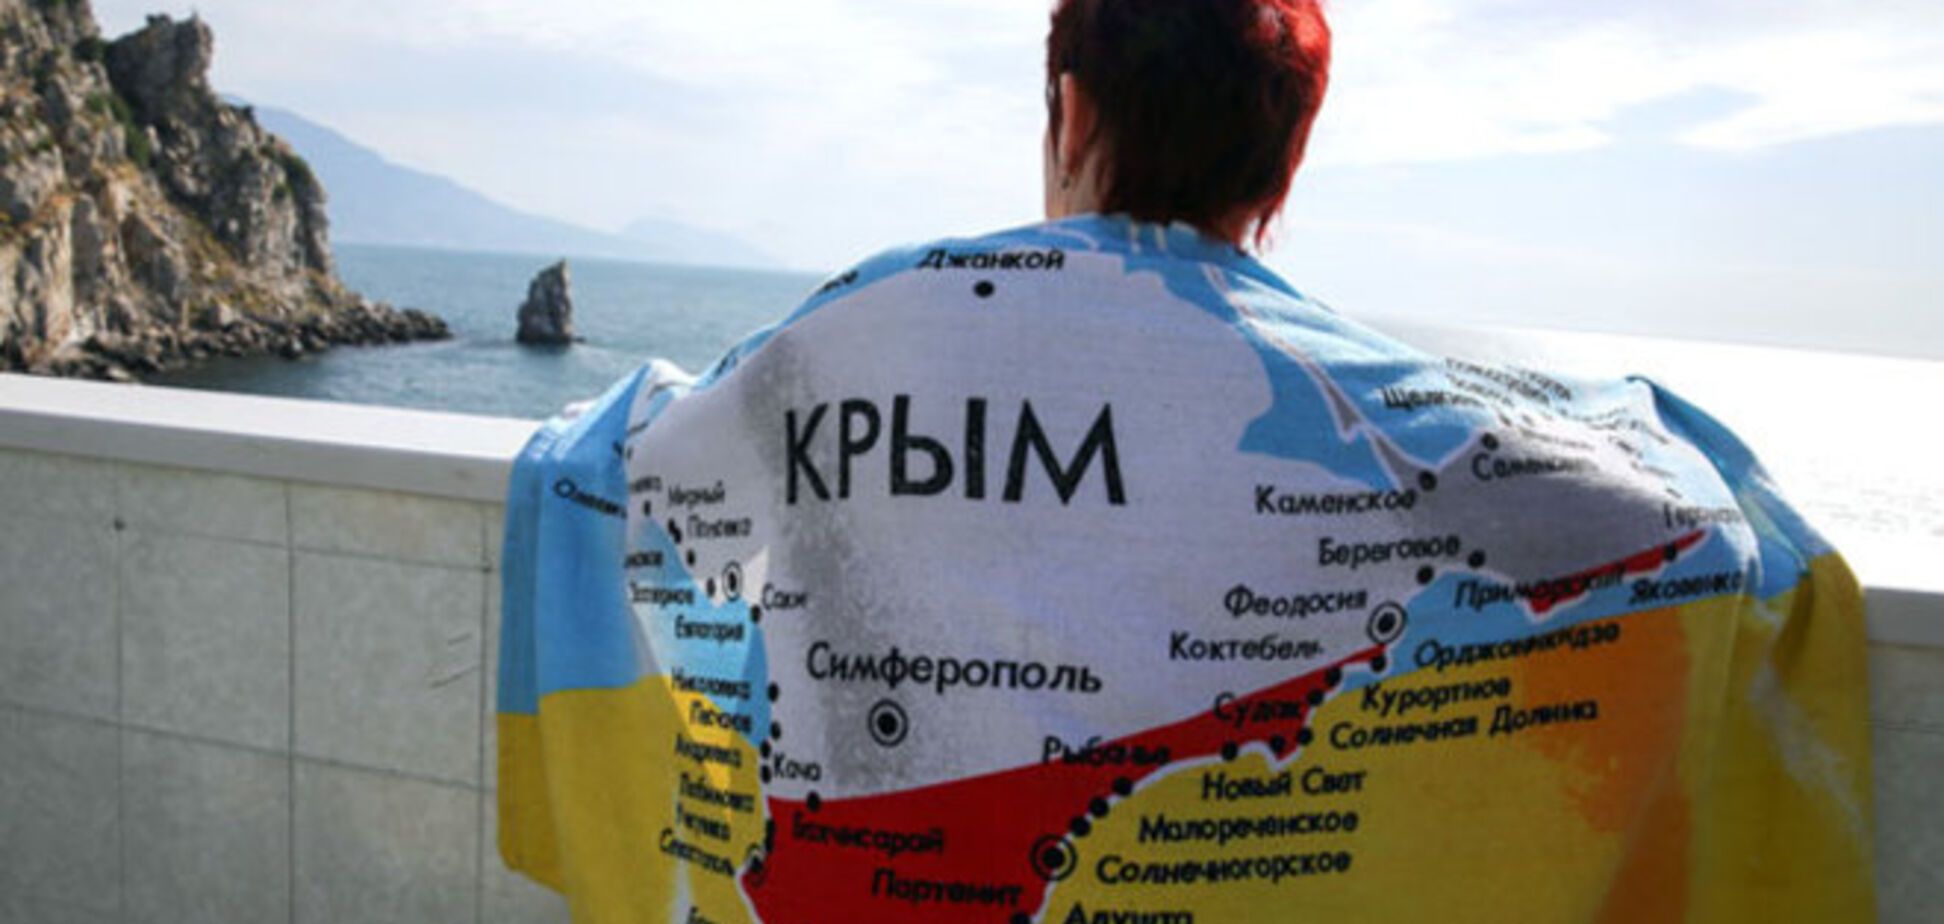 Почти год оккупации Крыма: национализация, изоляция, рост цен, цензура и страх